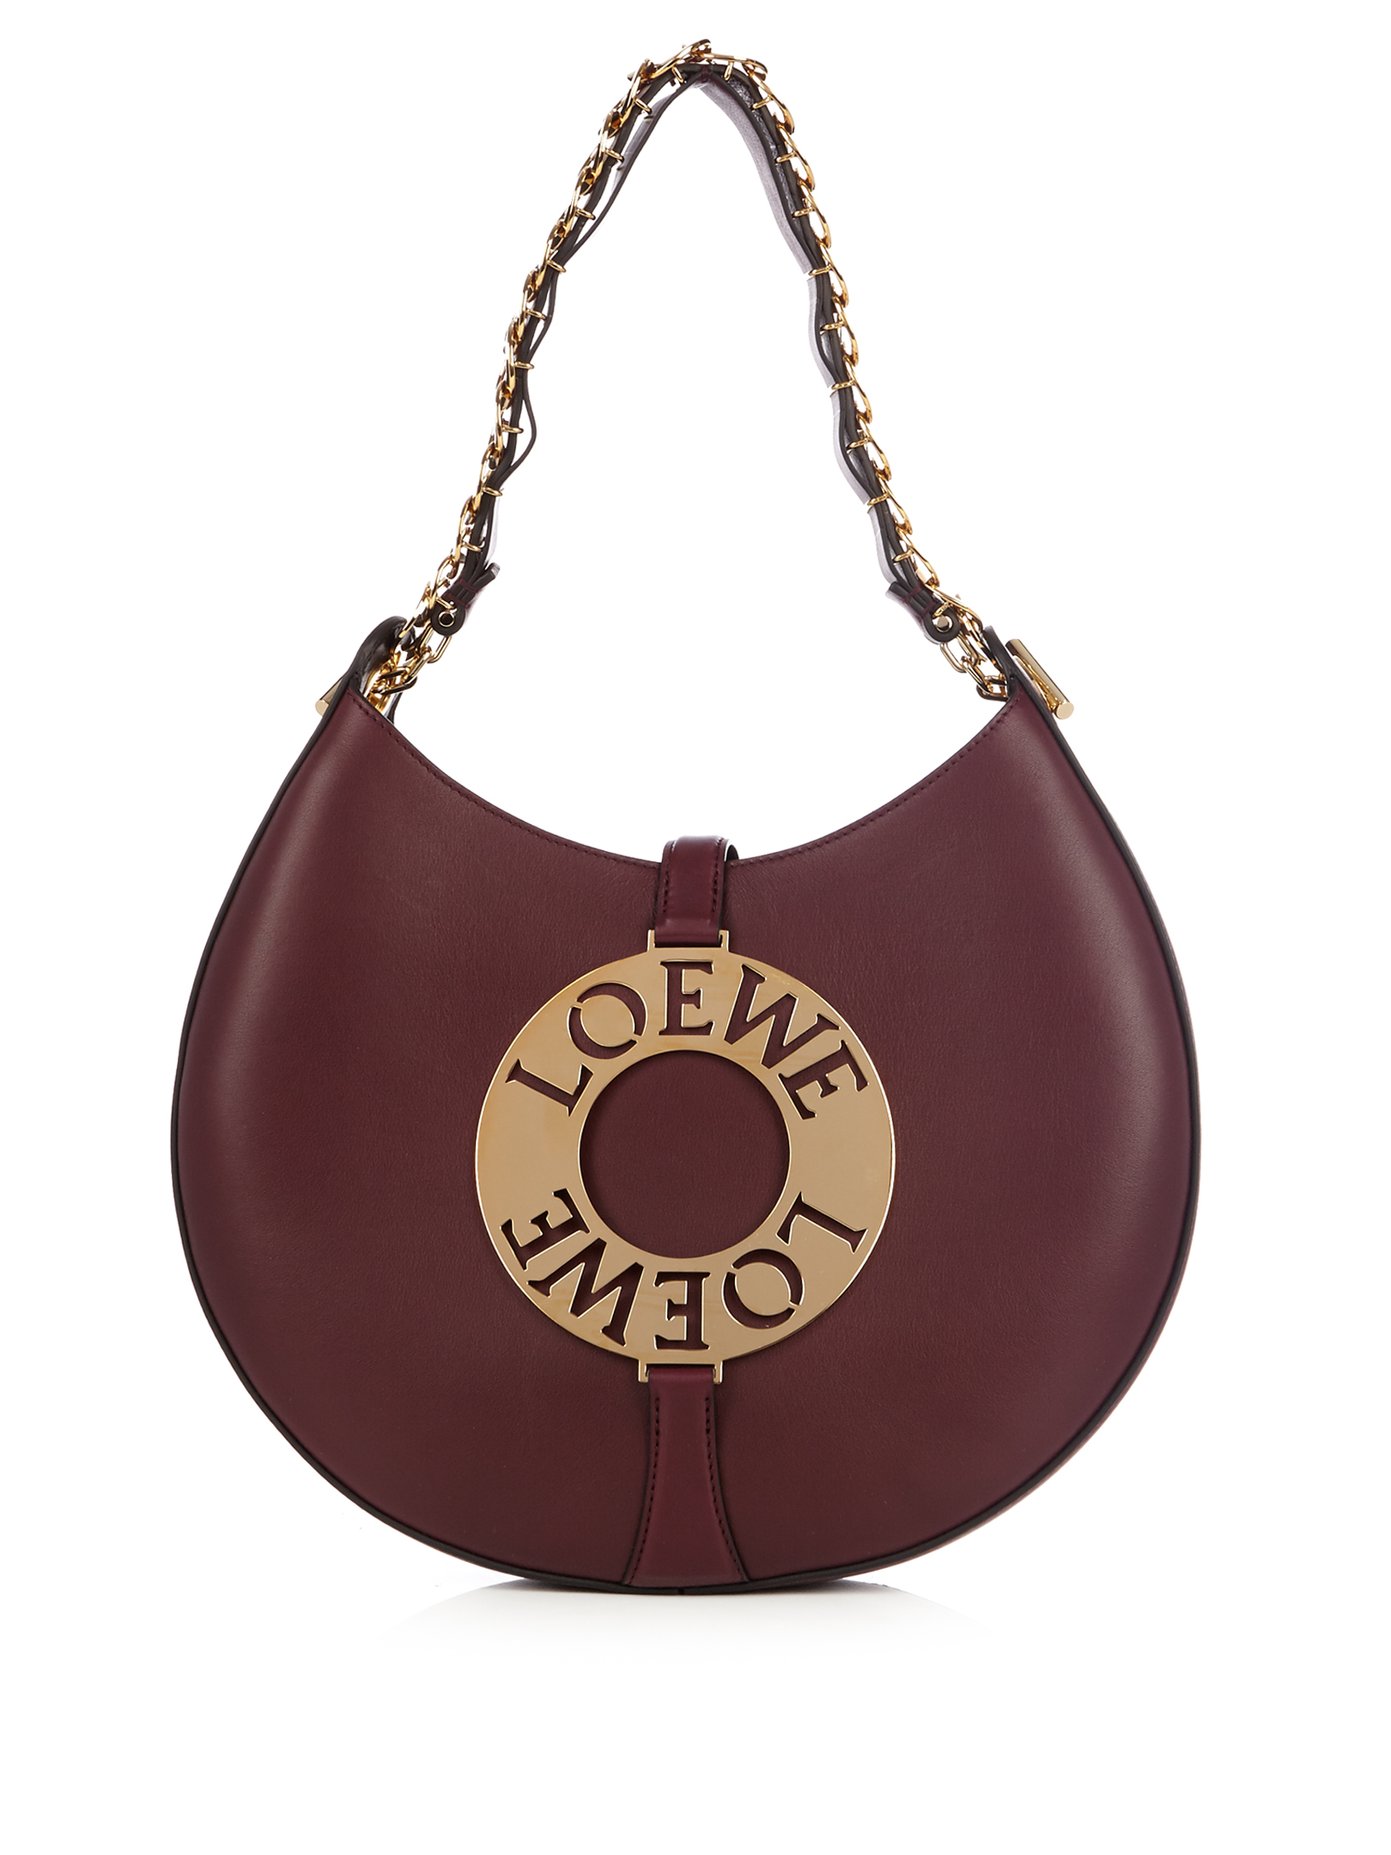 Joyce leather shoulder bag | Loewe 